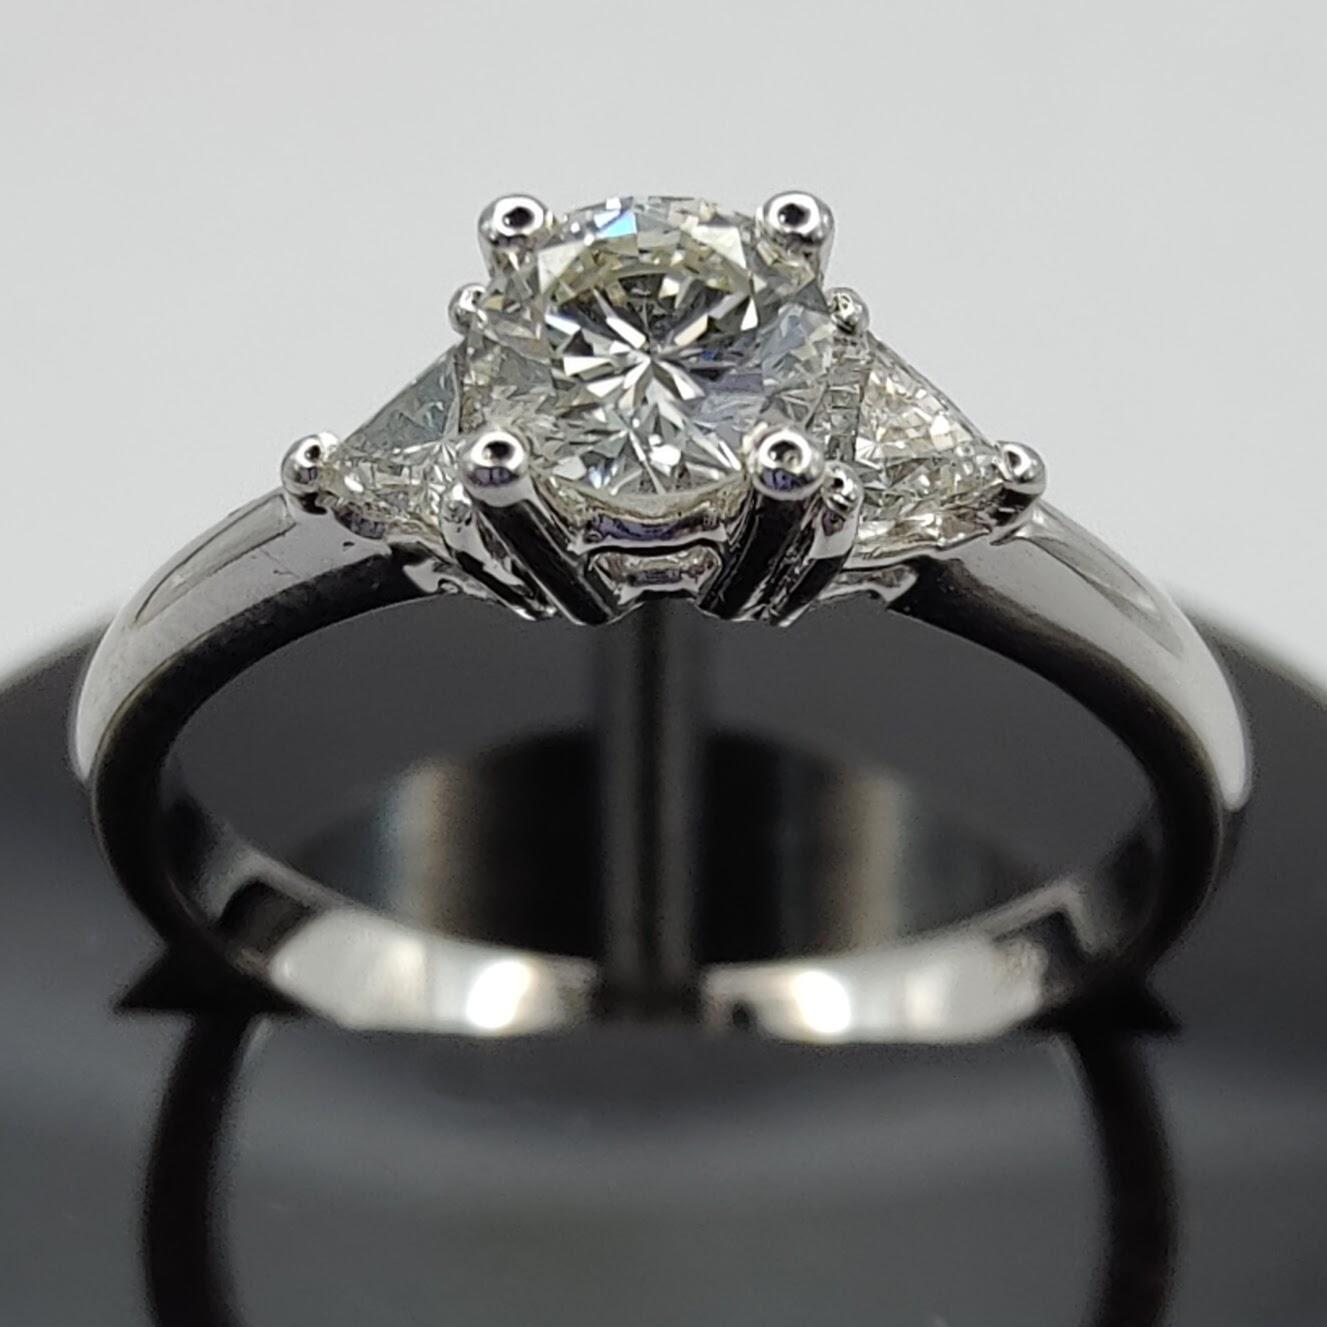 Cette bague de fiançailles en diamant à trois pierres est la quintessence de l'élégance et de la sophistication intemporelles. L'anneau est en or blanc 18 carats, un matériau très prisé pour sa durabilité et sa brillance. La monture en or blanc sert